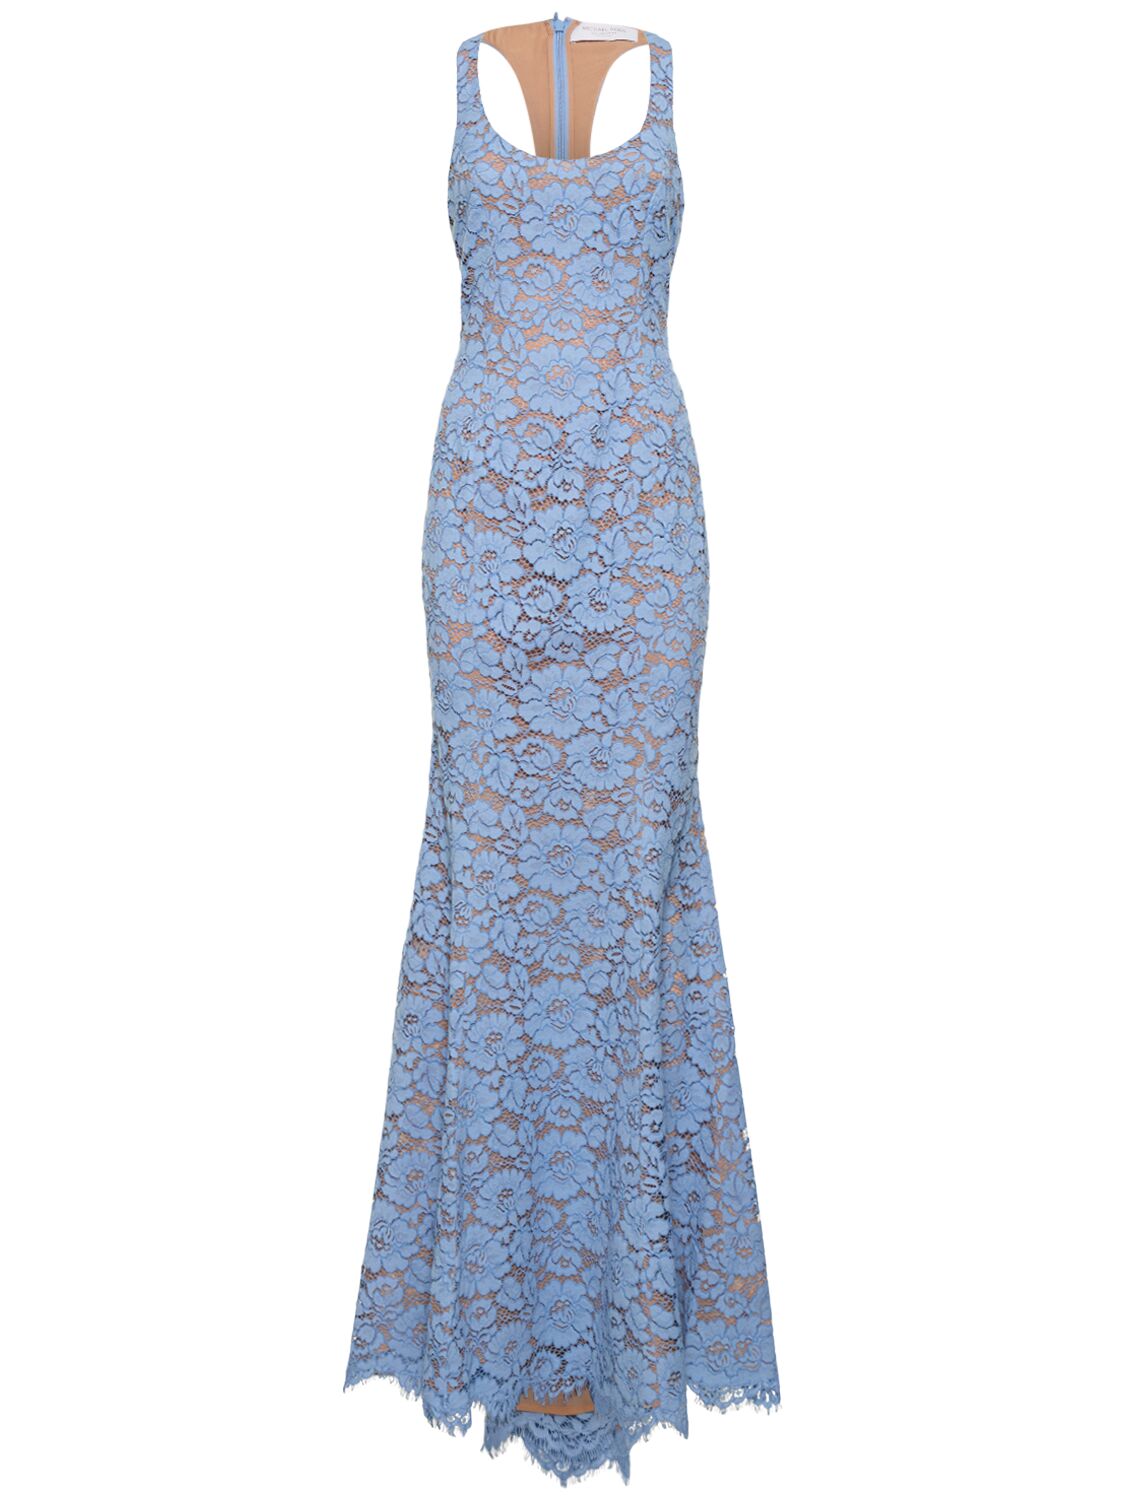 Michael Kors Floral Lace Cotton Fishtail Dress In Light Blue